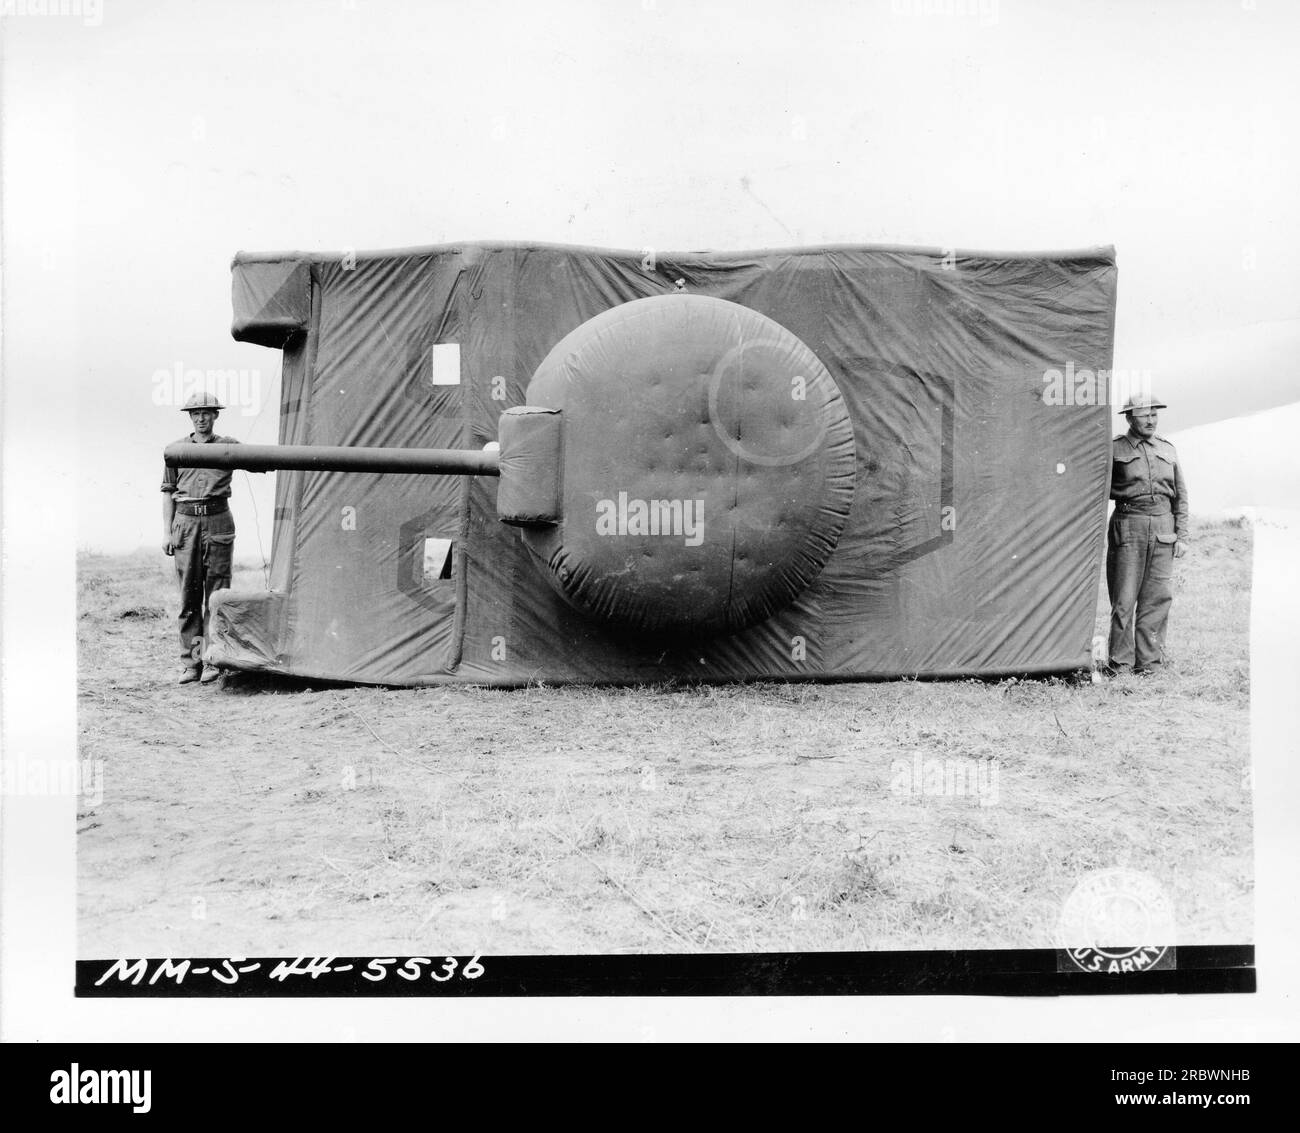 Draufsicht des britischen MM-S-44-5536-Dummy-Tanks. Dieser Scheintank wurde für militärische Täuschungszwecke im Ersten Weltkrieg geschaffen. Es imitierte das Aussehen eines echten Panzers, um feindliche Kräfte zu verwirren und zu täuschen. Stockfoto